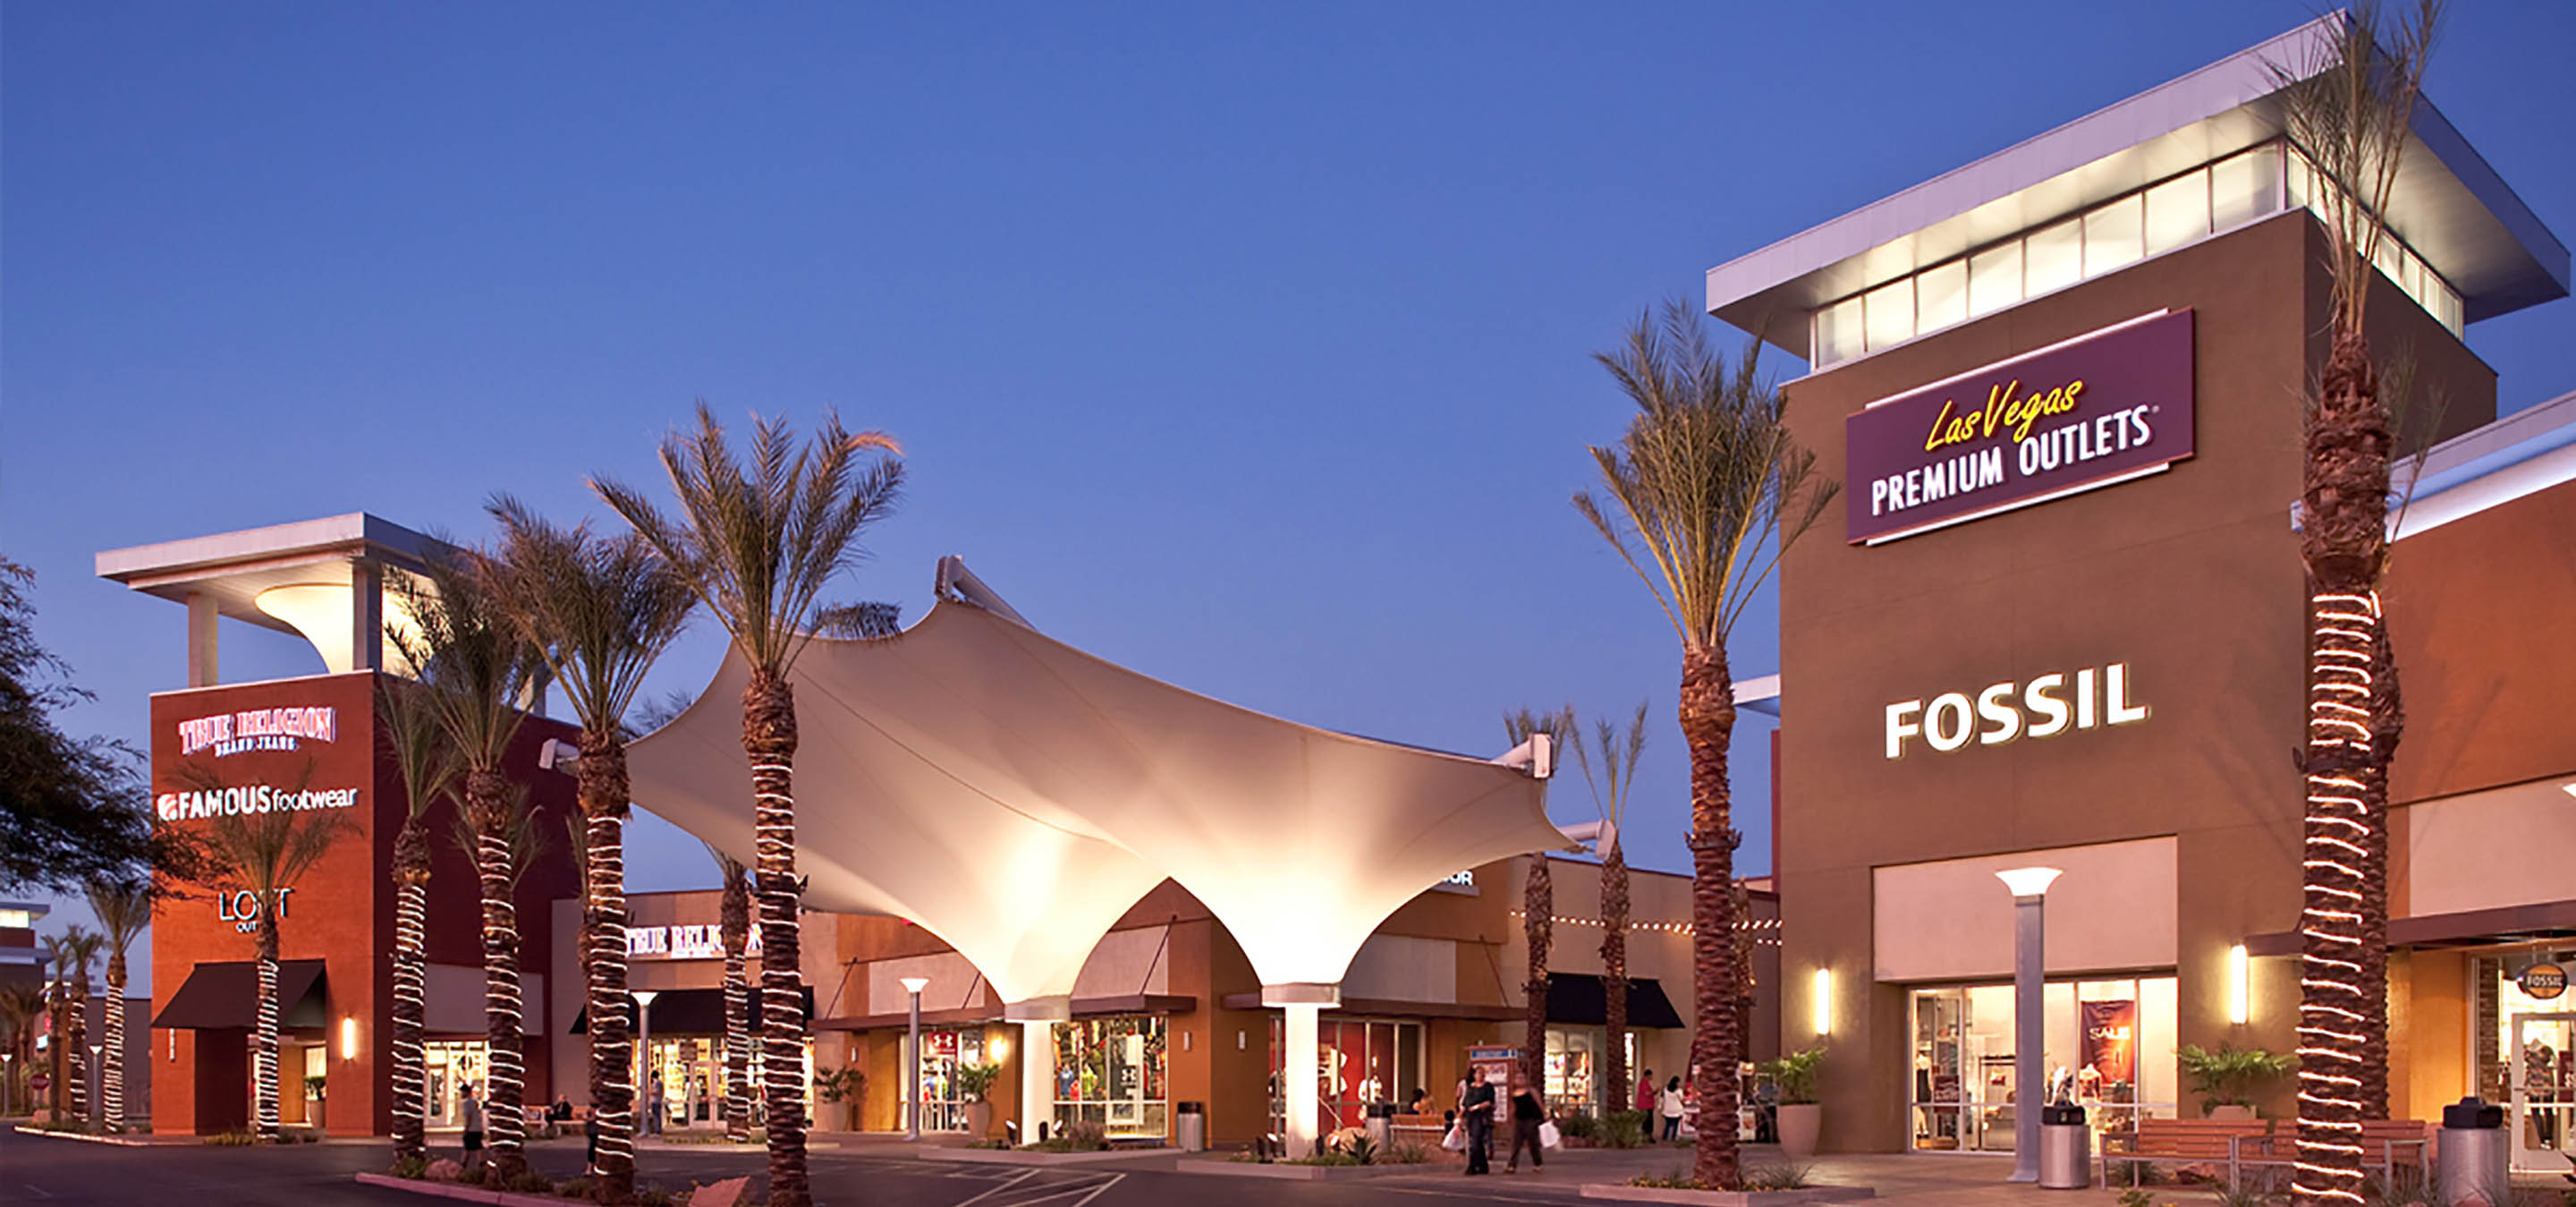 Las Vegas Premium Outlets - AO  Architecture. Design. Relationships.